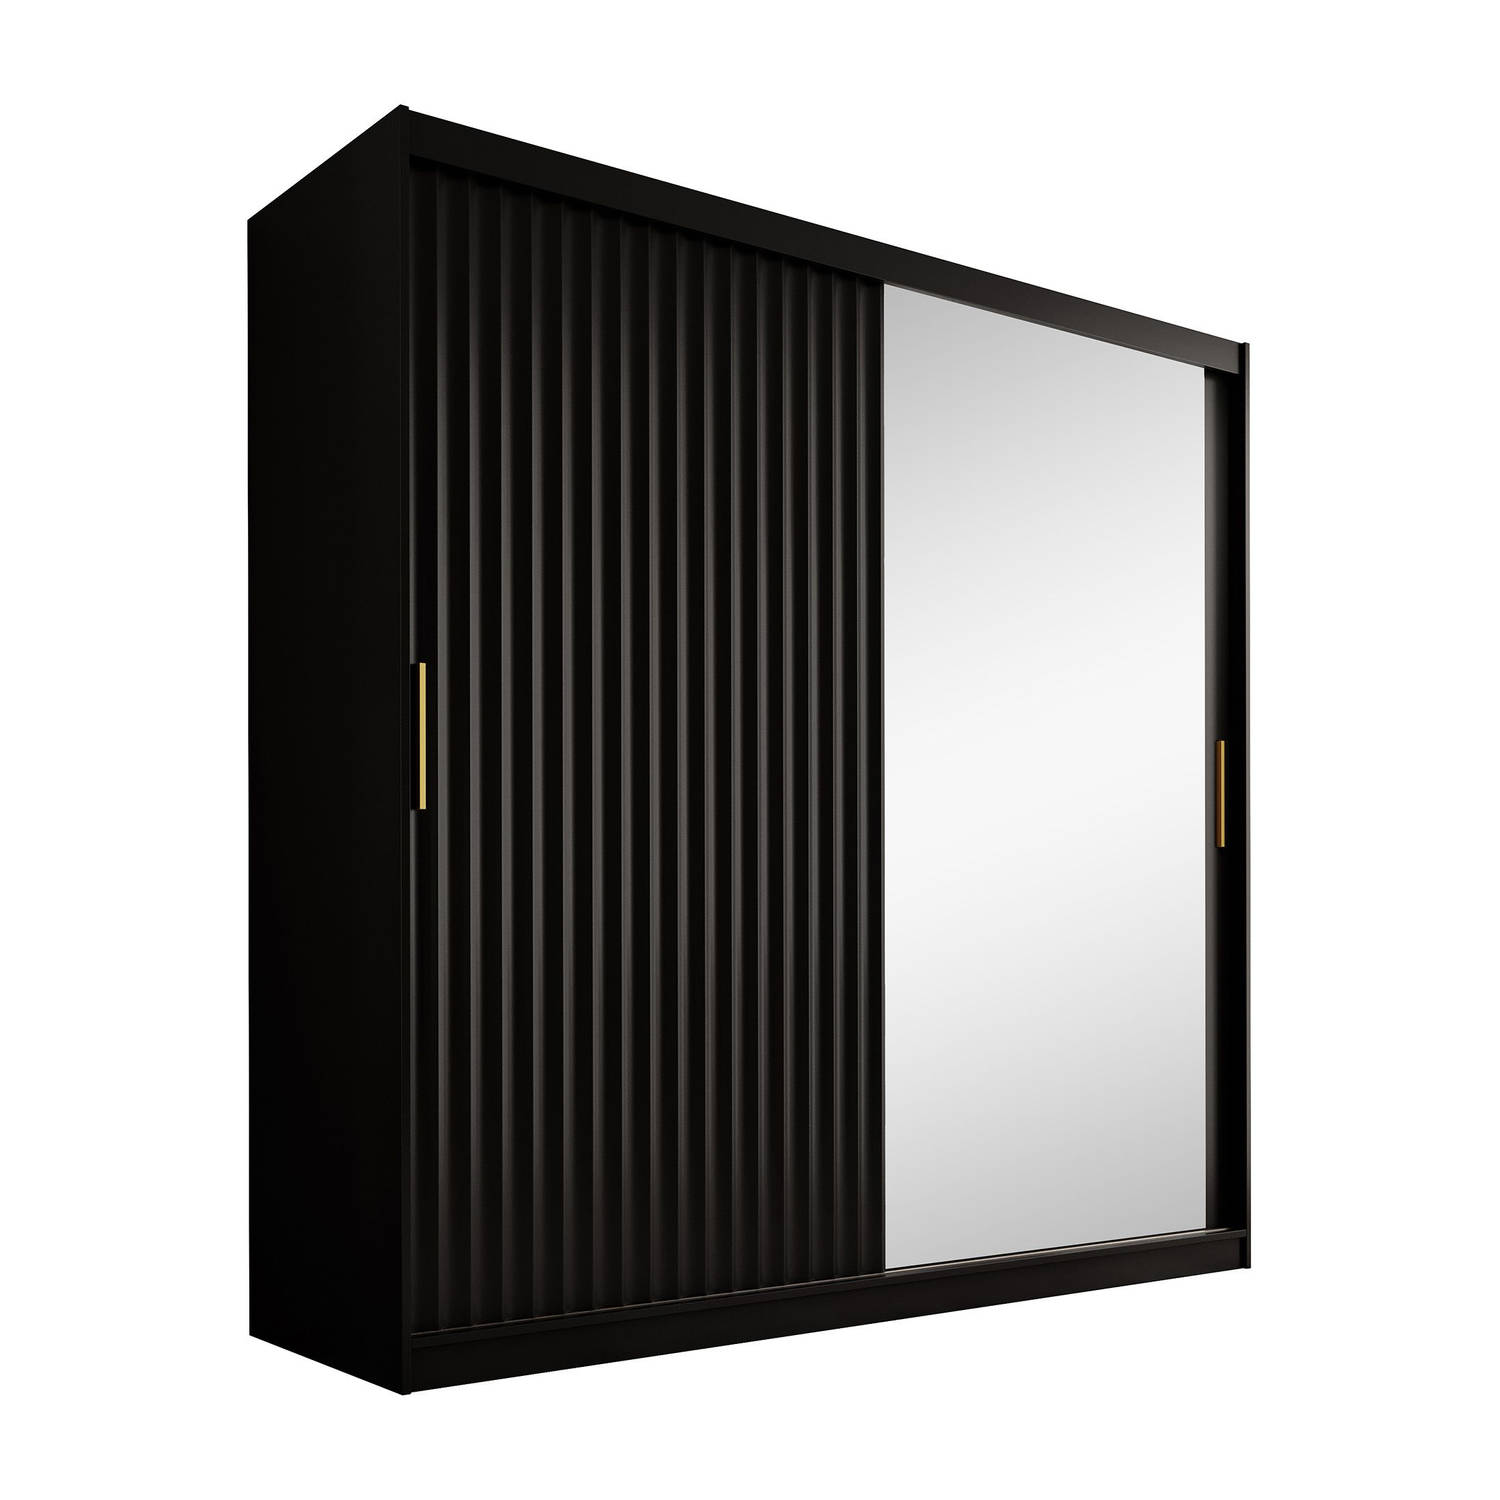 Meubella - Kledingkast Wynn - Mat zwart - 200 cm - Met spiegel